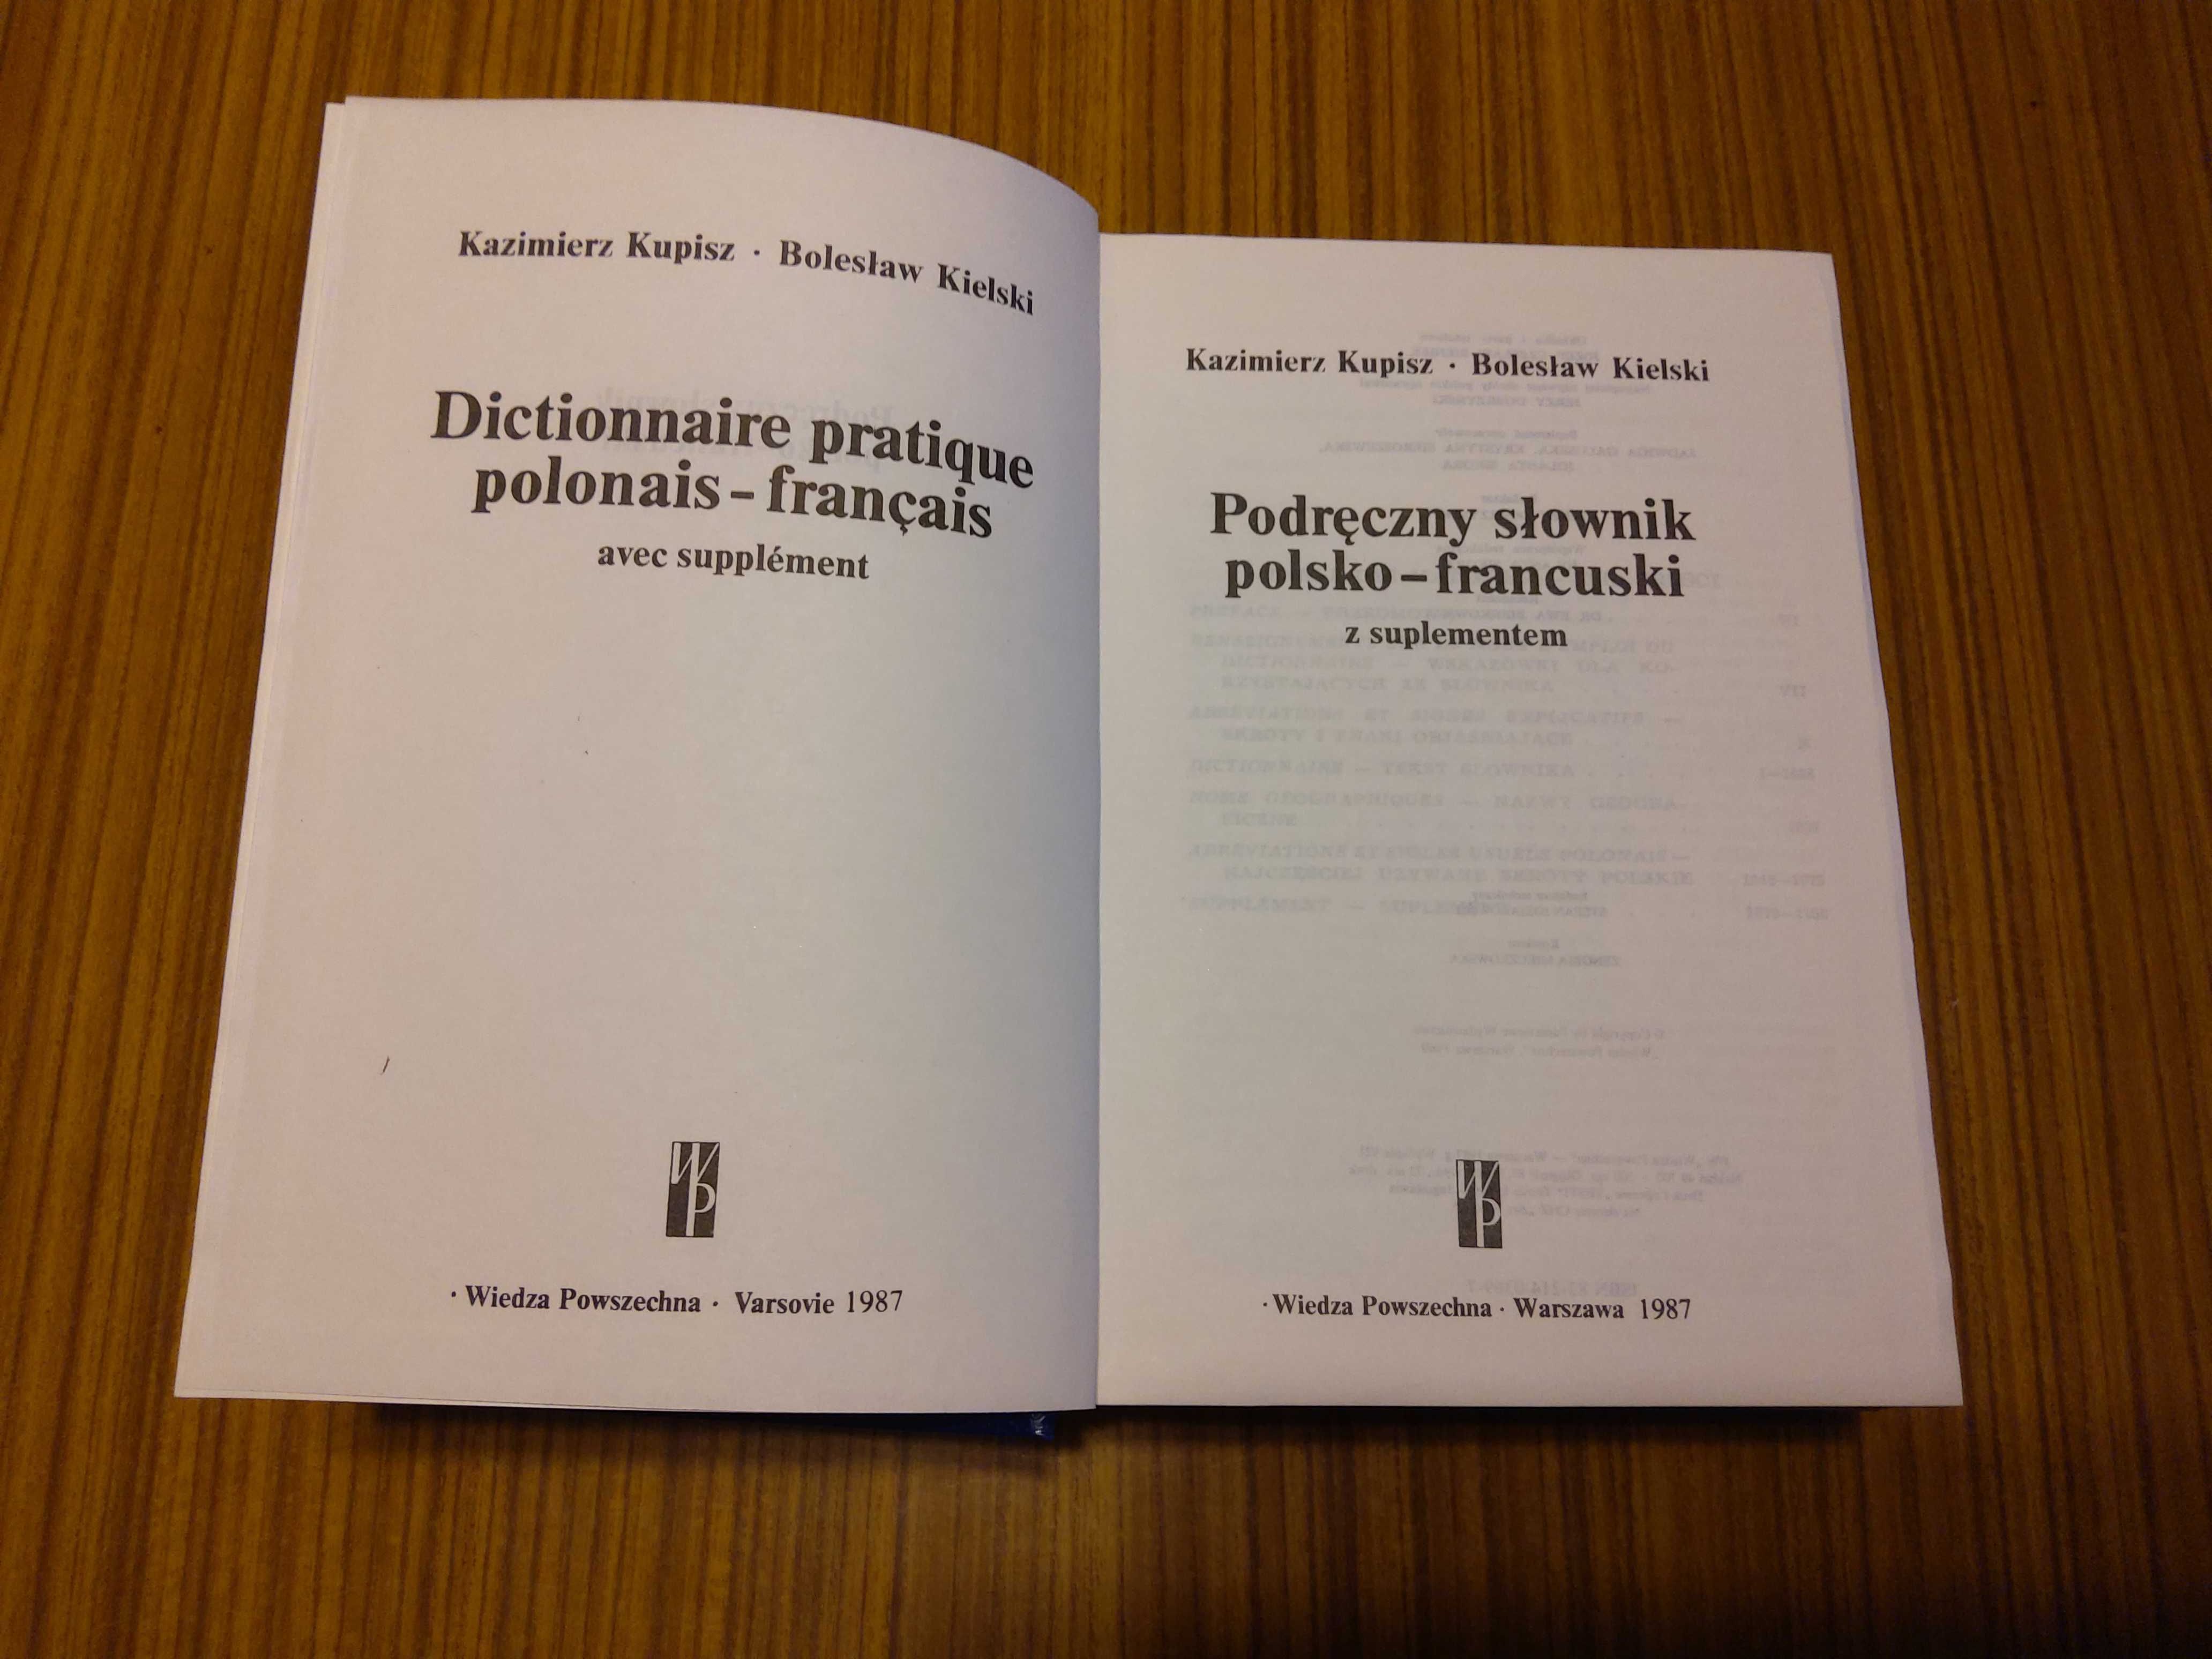 Podręczny słownik polsko-francuski francusko-polski